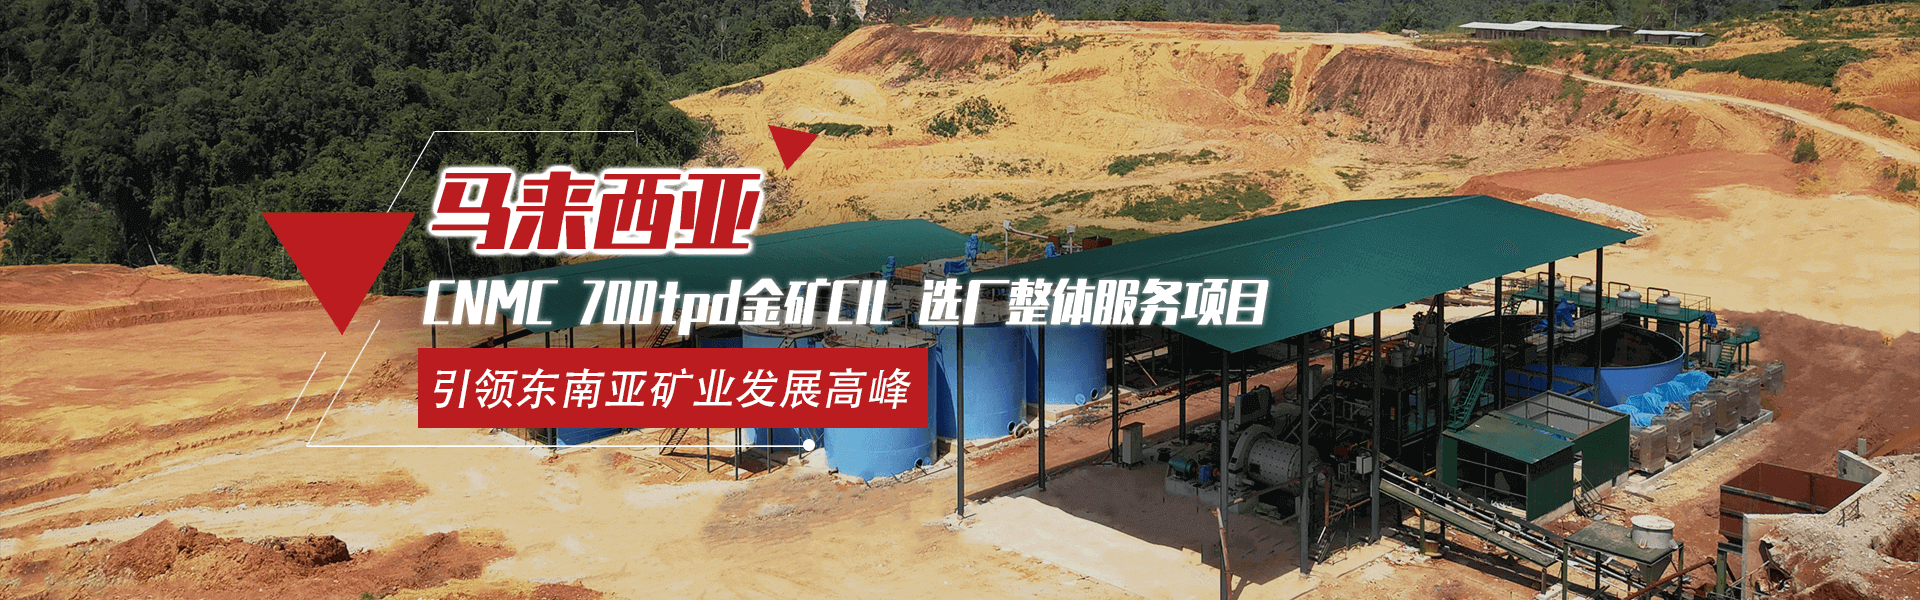 马来西亚CNMC 500t/d金矿CIL矿山全产业链服务项目